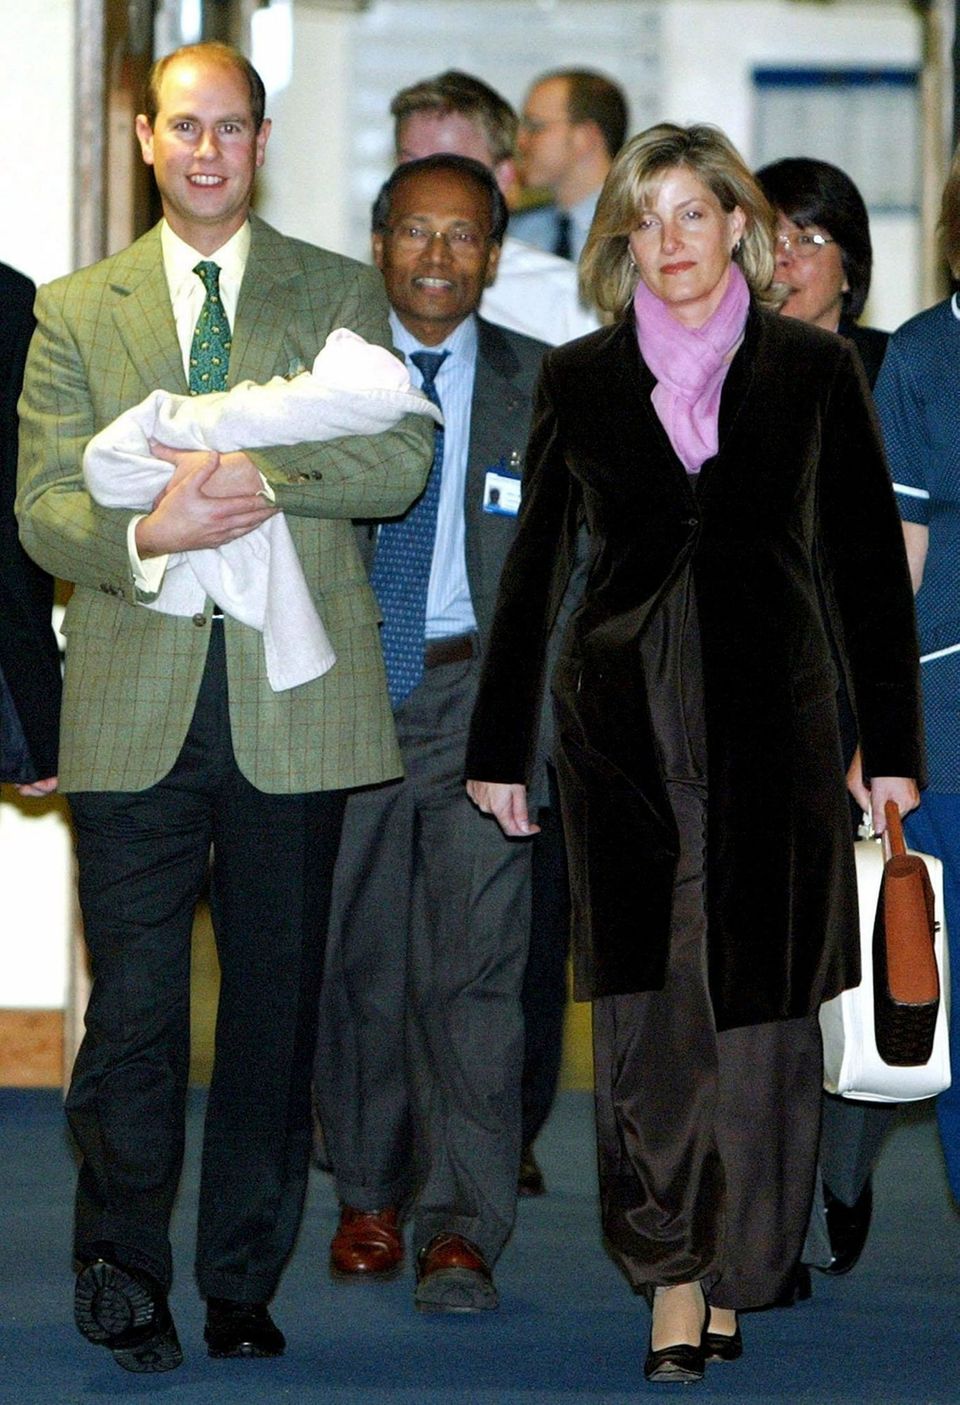 Prinz Edward und Gräfin Sophie konnten nach zwei Wochen am 23.11.2003 endlich mit ihrer Tochter Lady Louise Windsor das Frimley Park Hospital in Surrey verlassen.